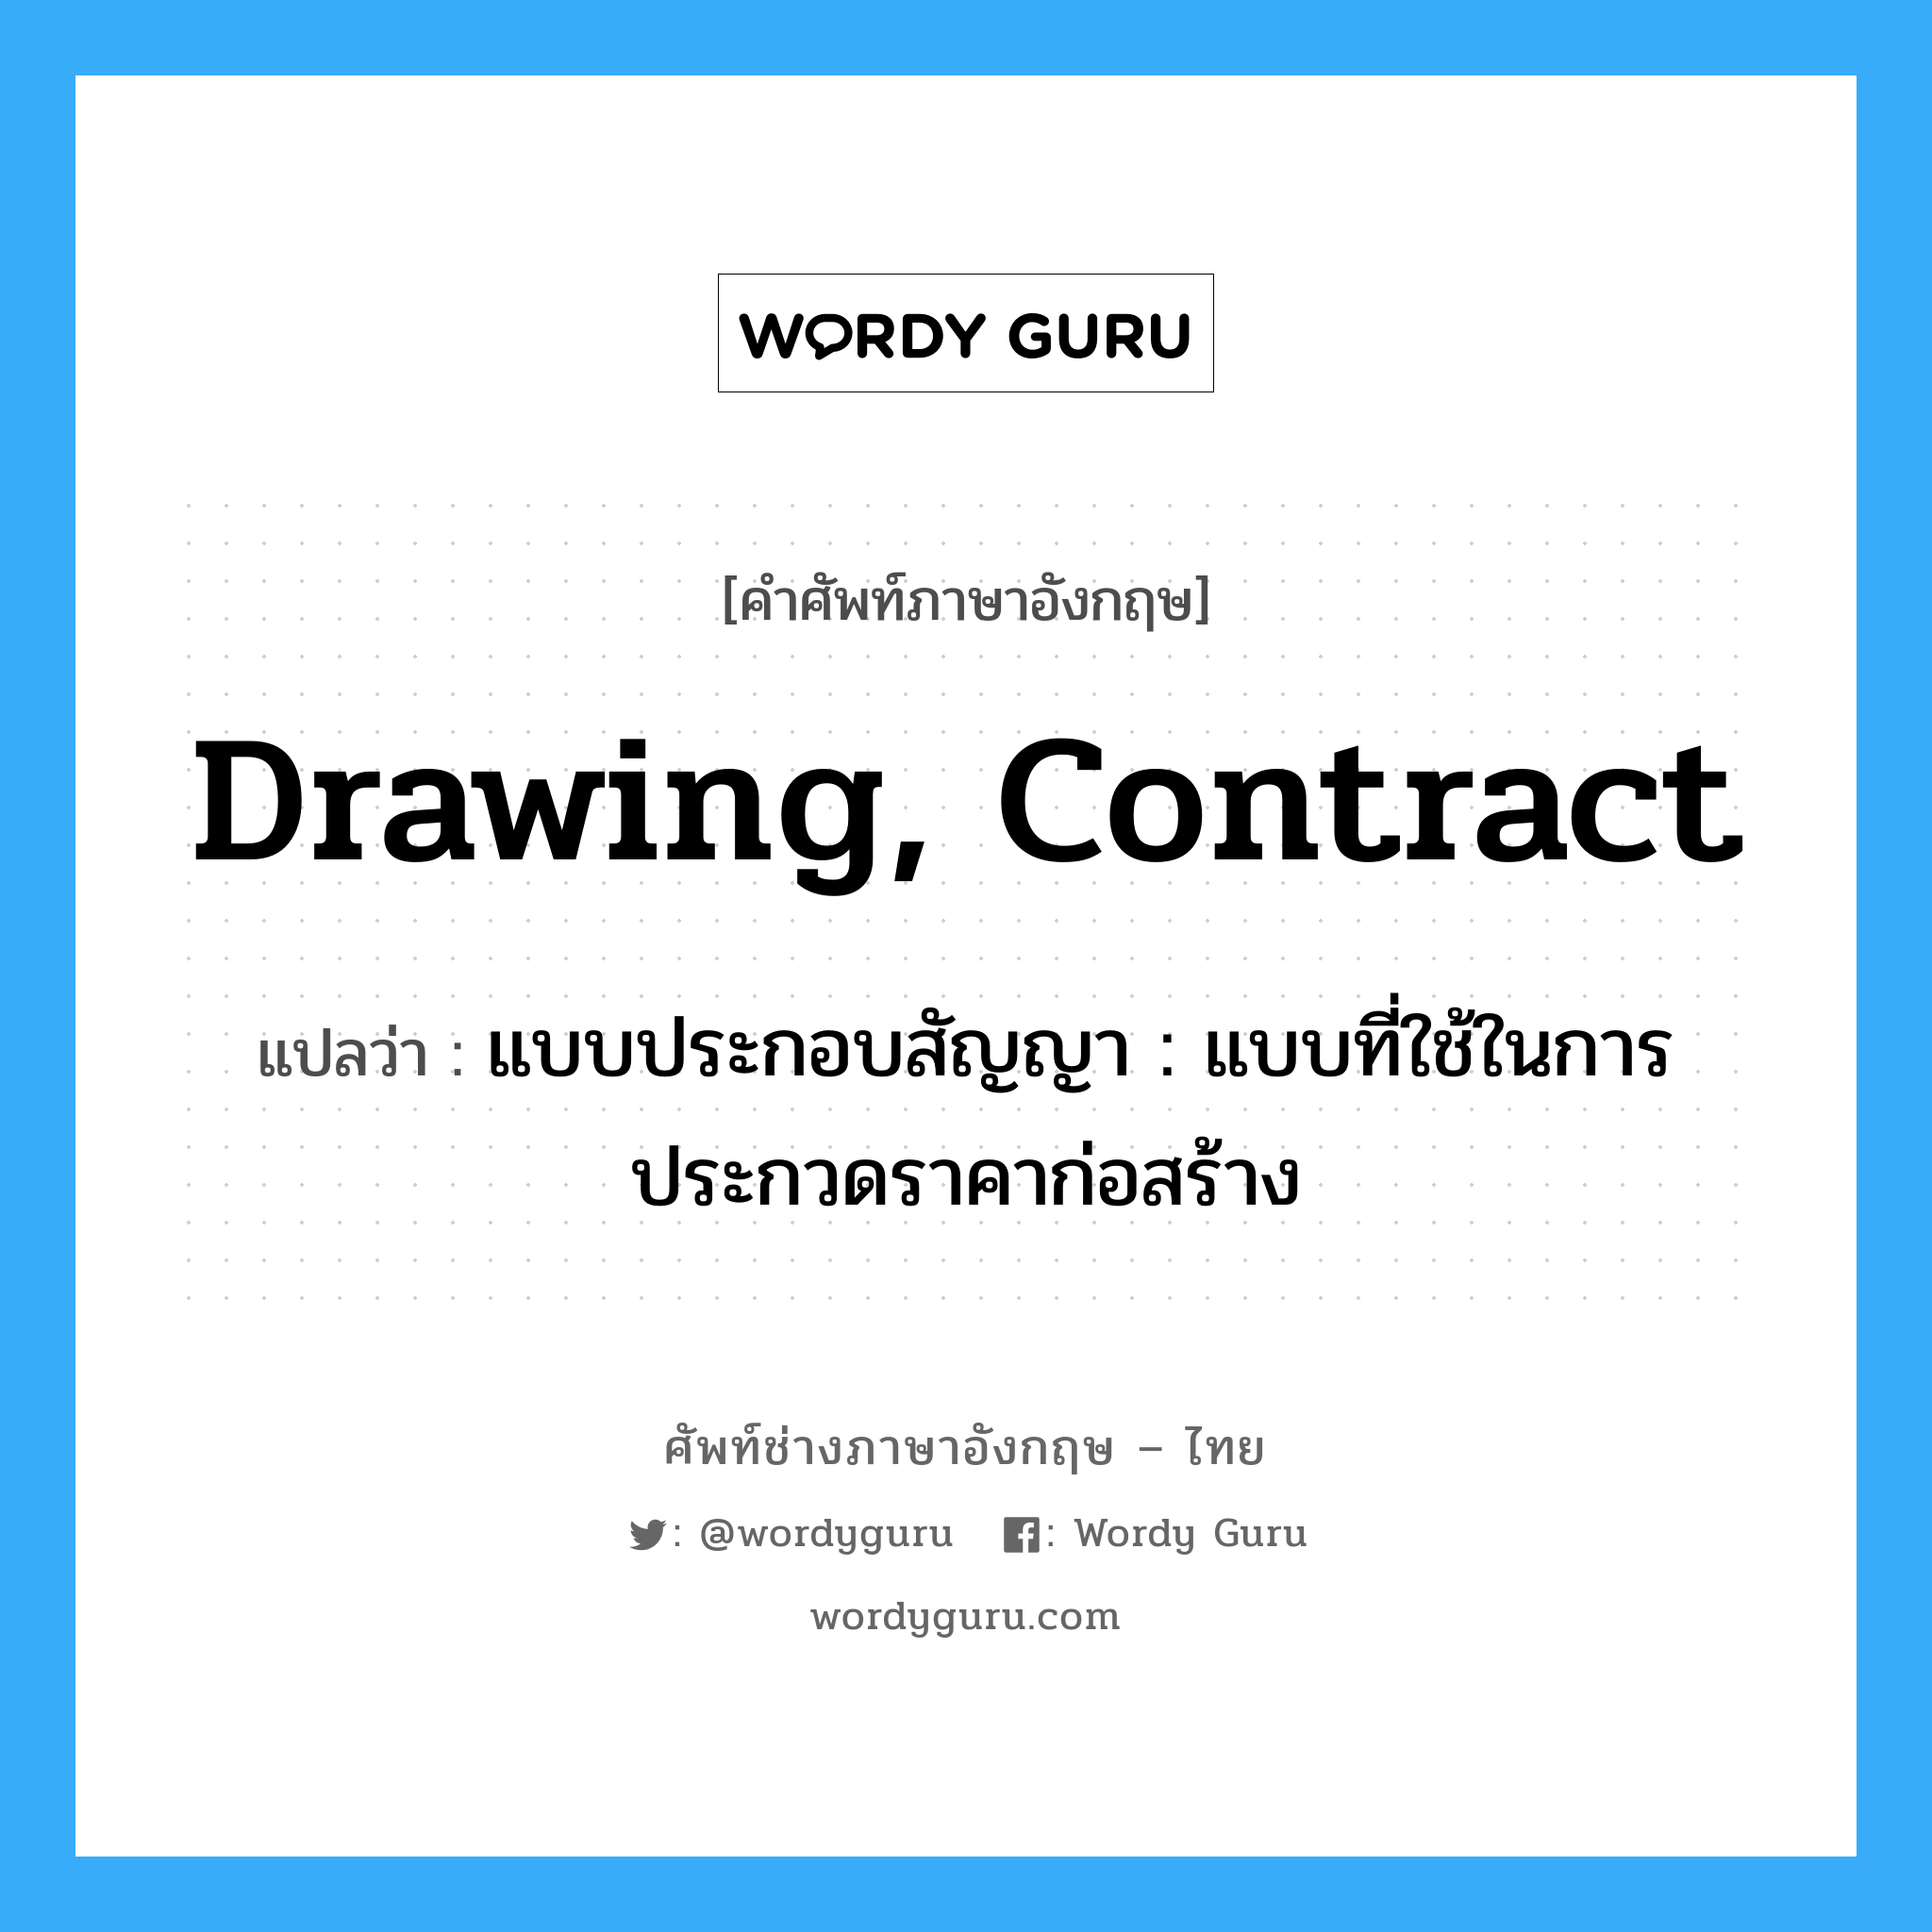 drawing, contract แปลว่า?, คำศัพท์ช่างภาษาอังกฤษ - ไทย drawing, contract คำศัพท์ภาษาอังกฤษ drawing, contract แปลว่า แบบประกอบสัญญา : แบบที่ใช้ในการประกวดราคาก่อสร้าง